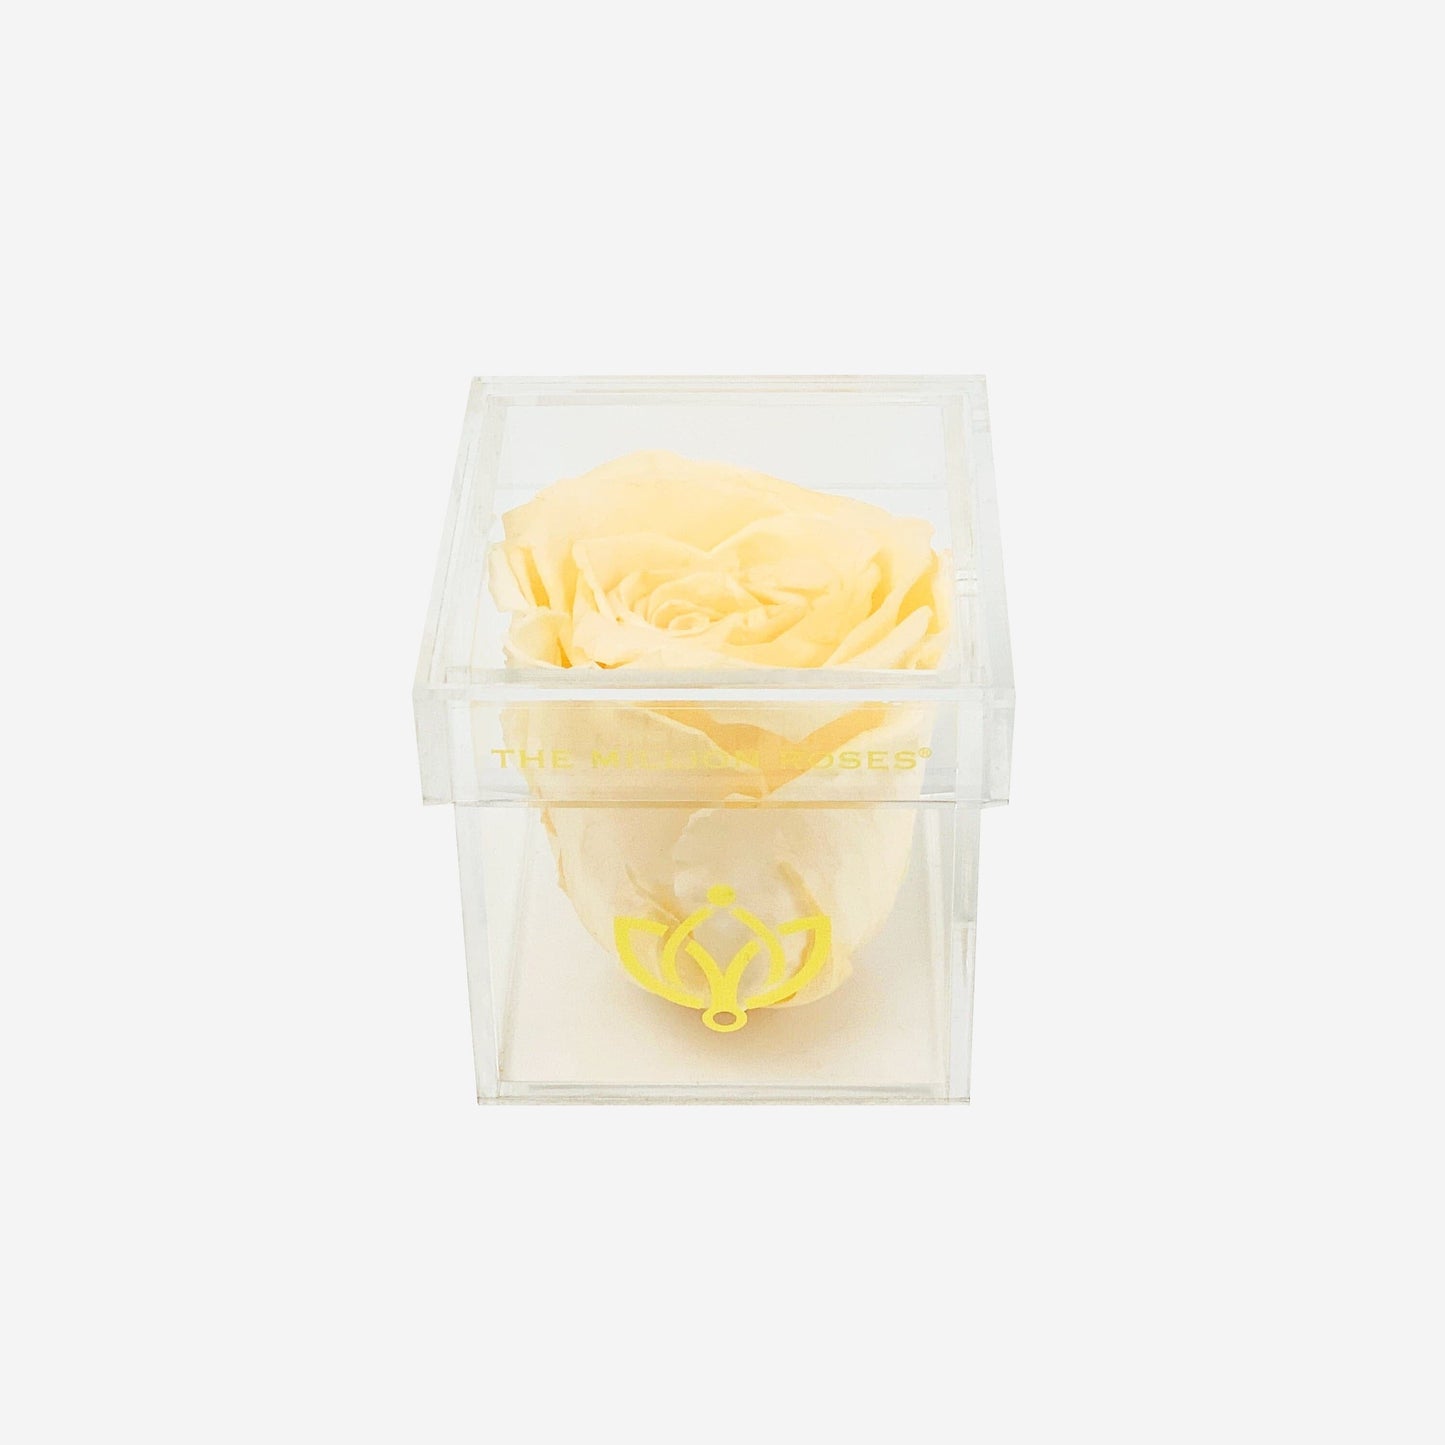 Acrylic Single Box | Ivory Rose - The Million Roses